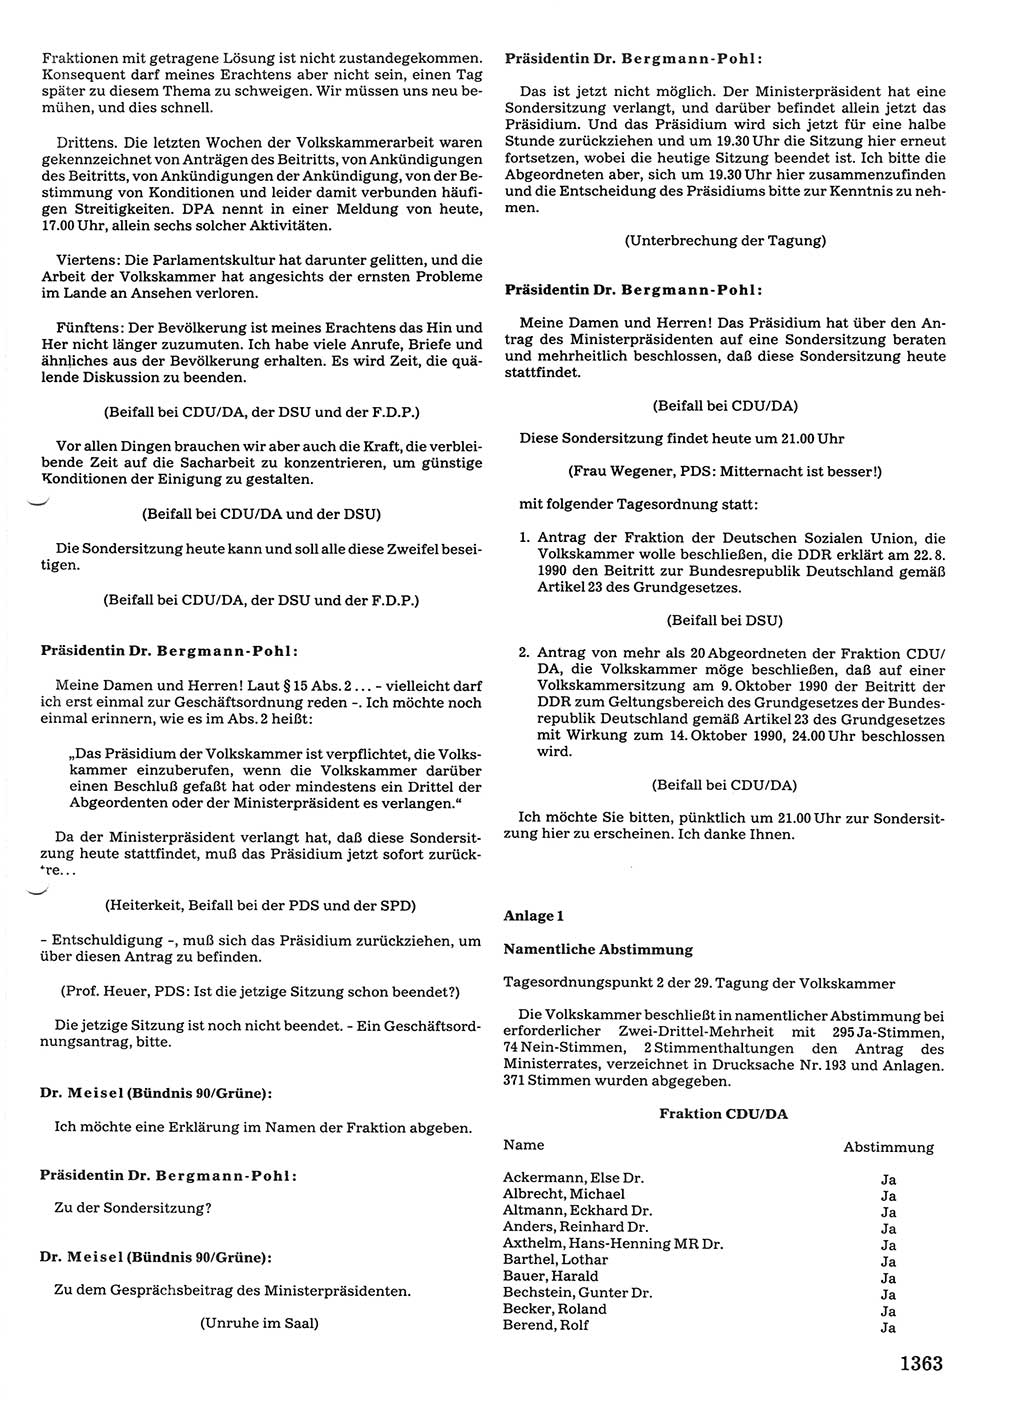 Tagungen der Volkskammer (VK) der Deutschen Demokratischen Republik (DDR), 10. Wahlperiode 1990, Seite 1363 (VK. DDR 10. WP. 1990, Prot. Tg. 1-38, 5.4.-2.10.1990, S. 1363)